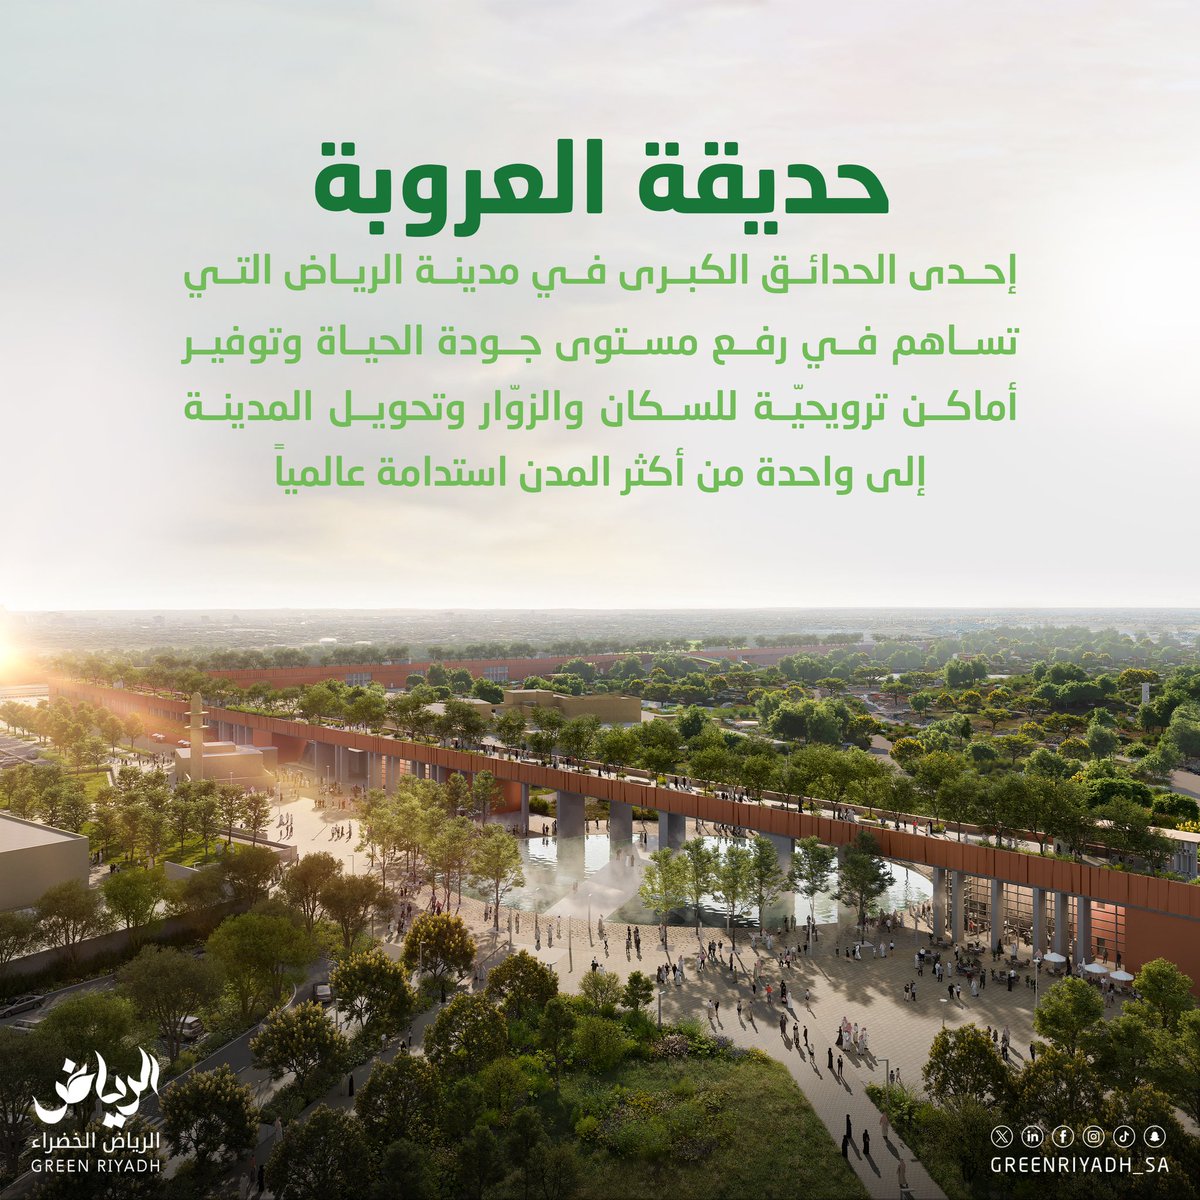 تهدف #حديقة_العروبة بمساحاتها الخضراء وتصاميمها الفريدة ومرافقها المتنوعة إلى إتاحة أماكن ترويحيّة لسكان مدينة الرياض #الرياض_الخضراء #رؤية_السعودية_2030